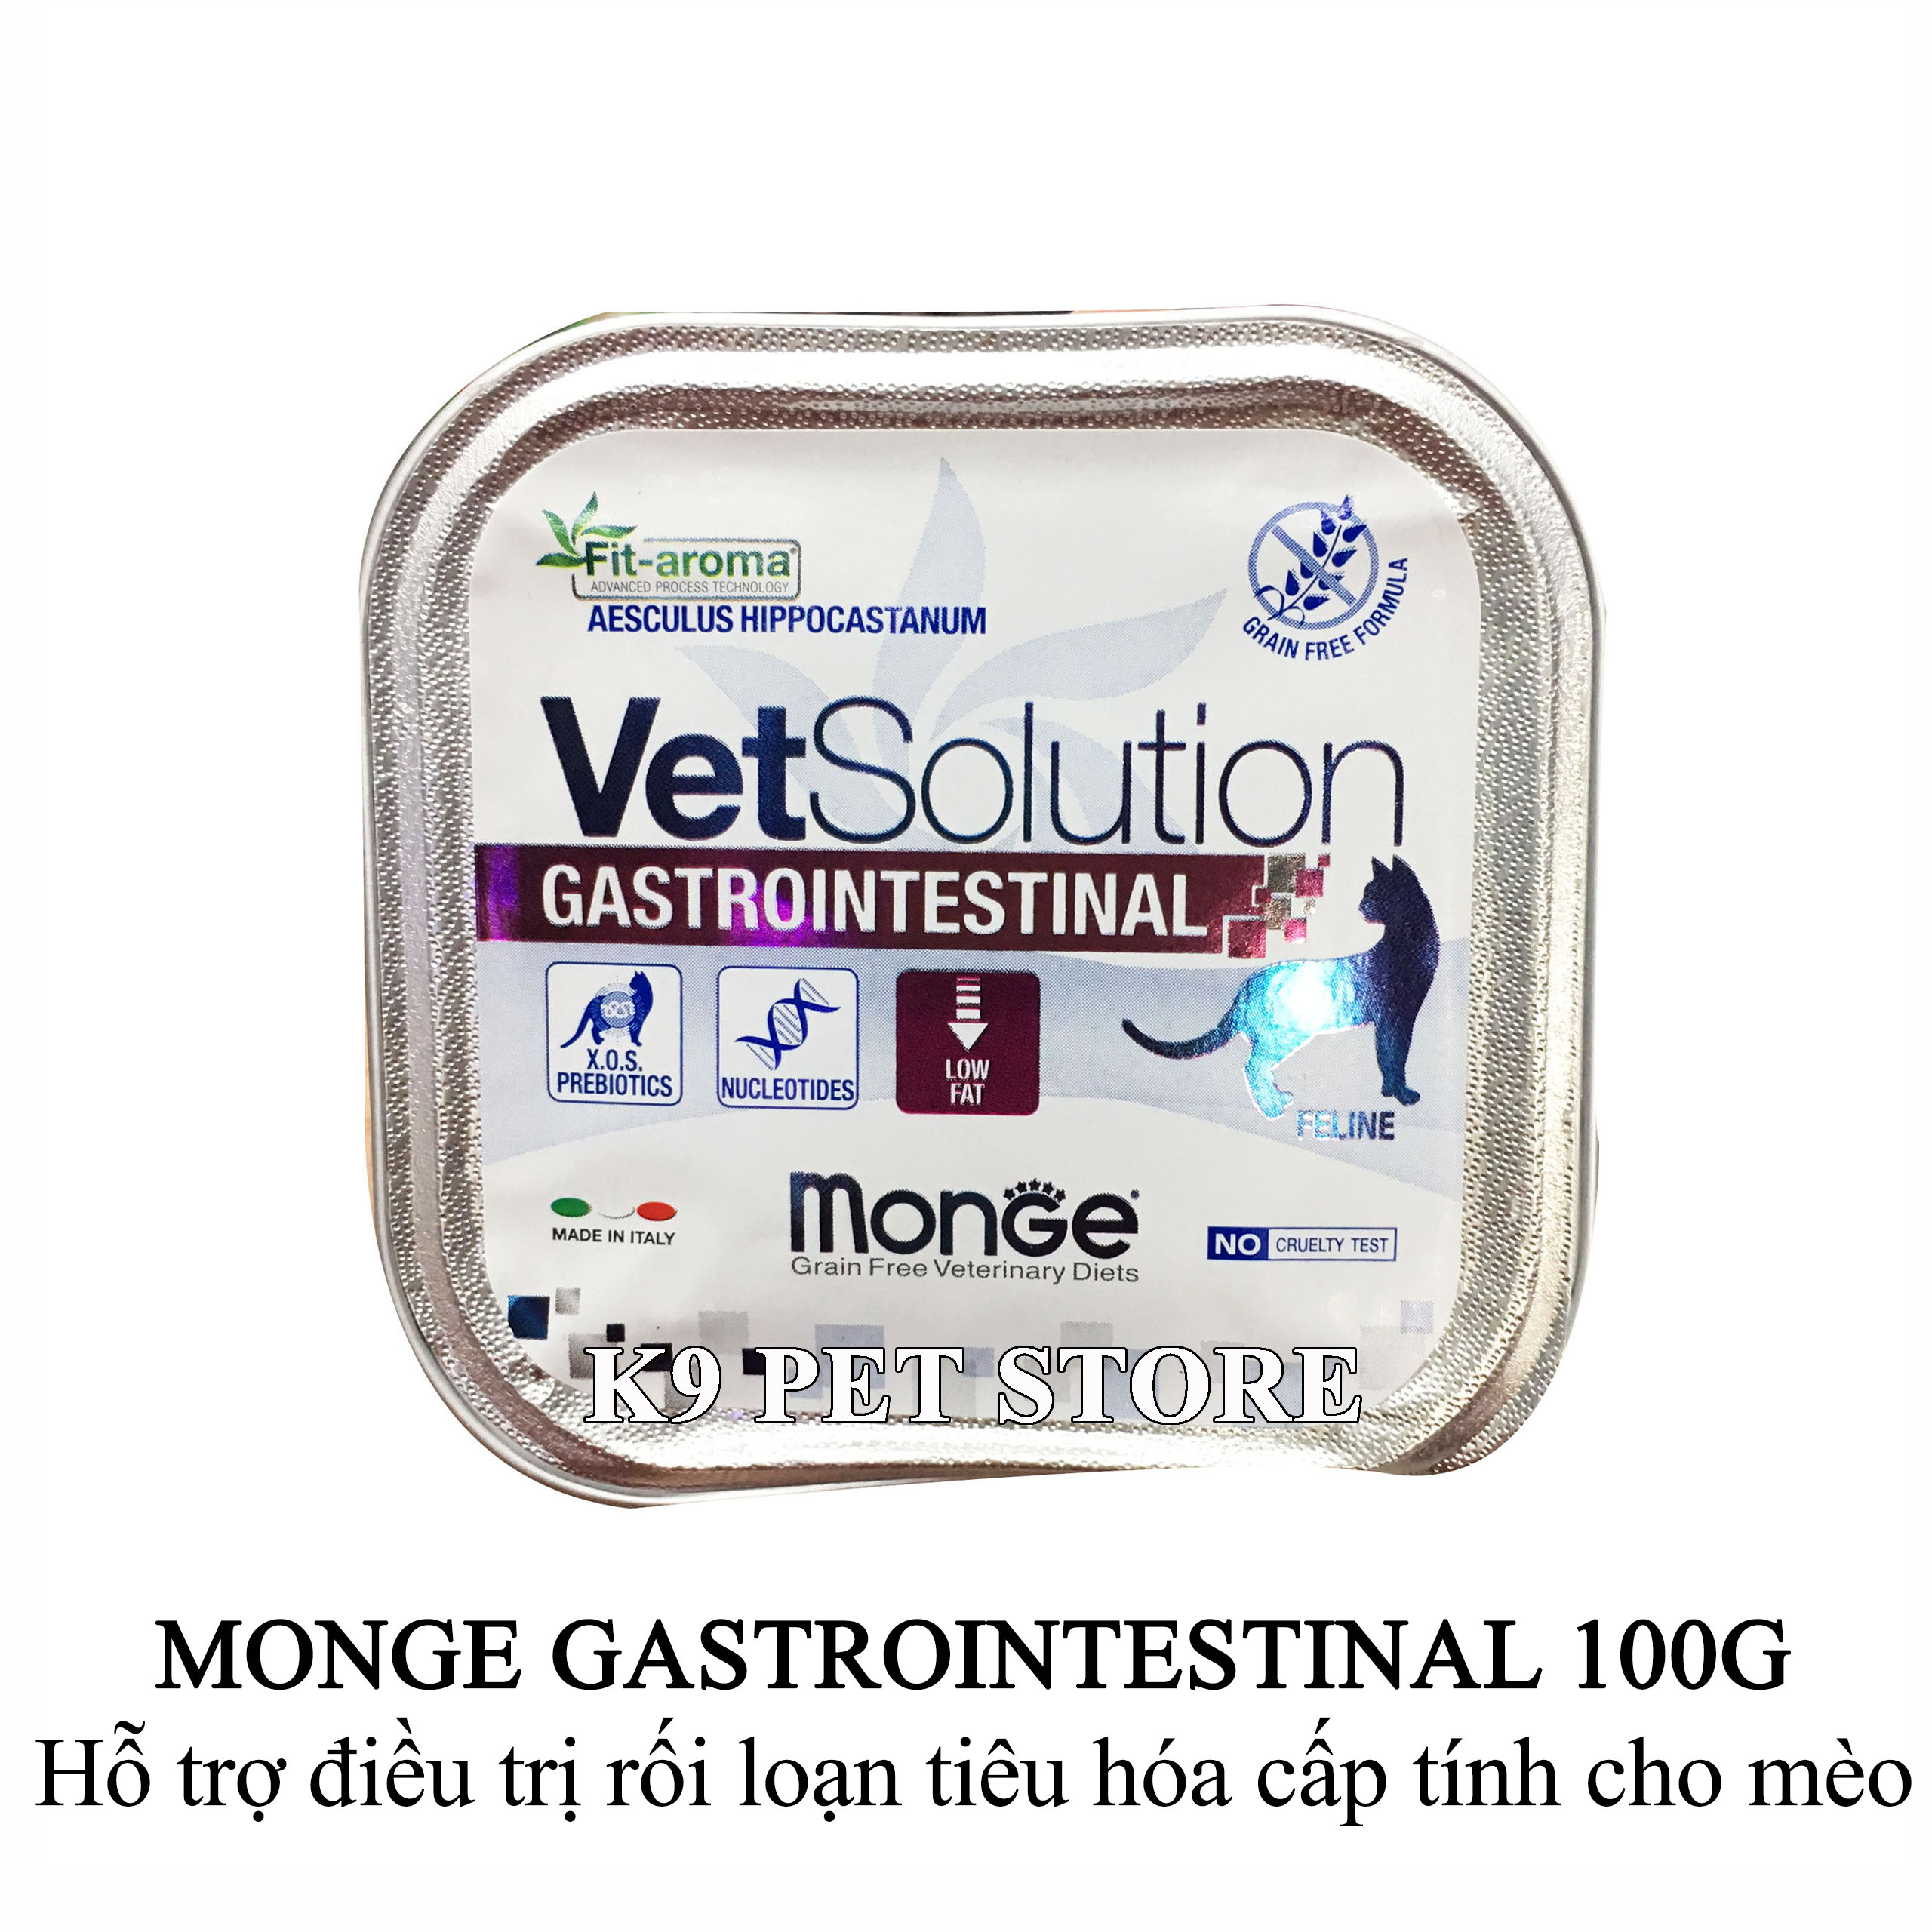 Pate Monge Gastrointestinal 100g - Hỗ trợ điều trị rối loạn tiêu hóa cấp tính cho mèo